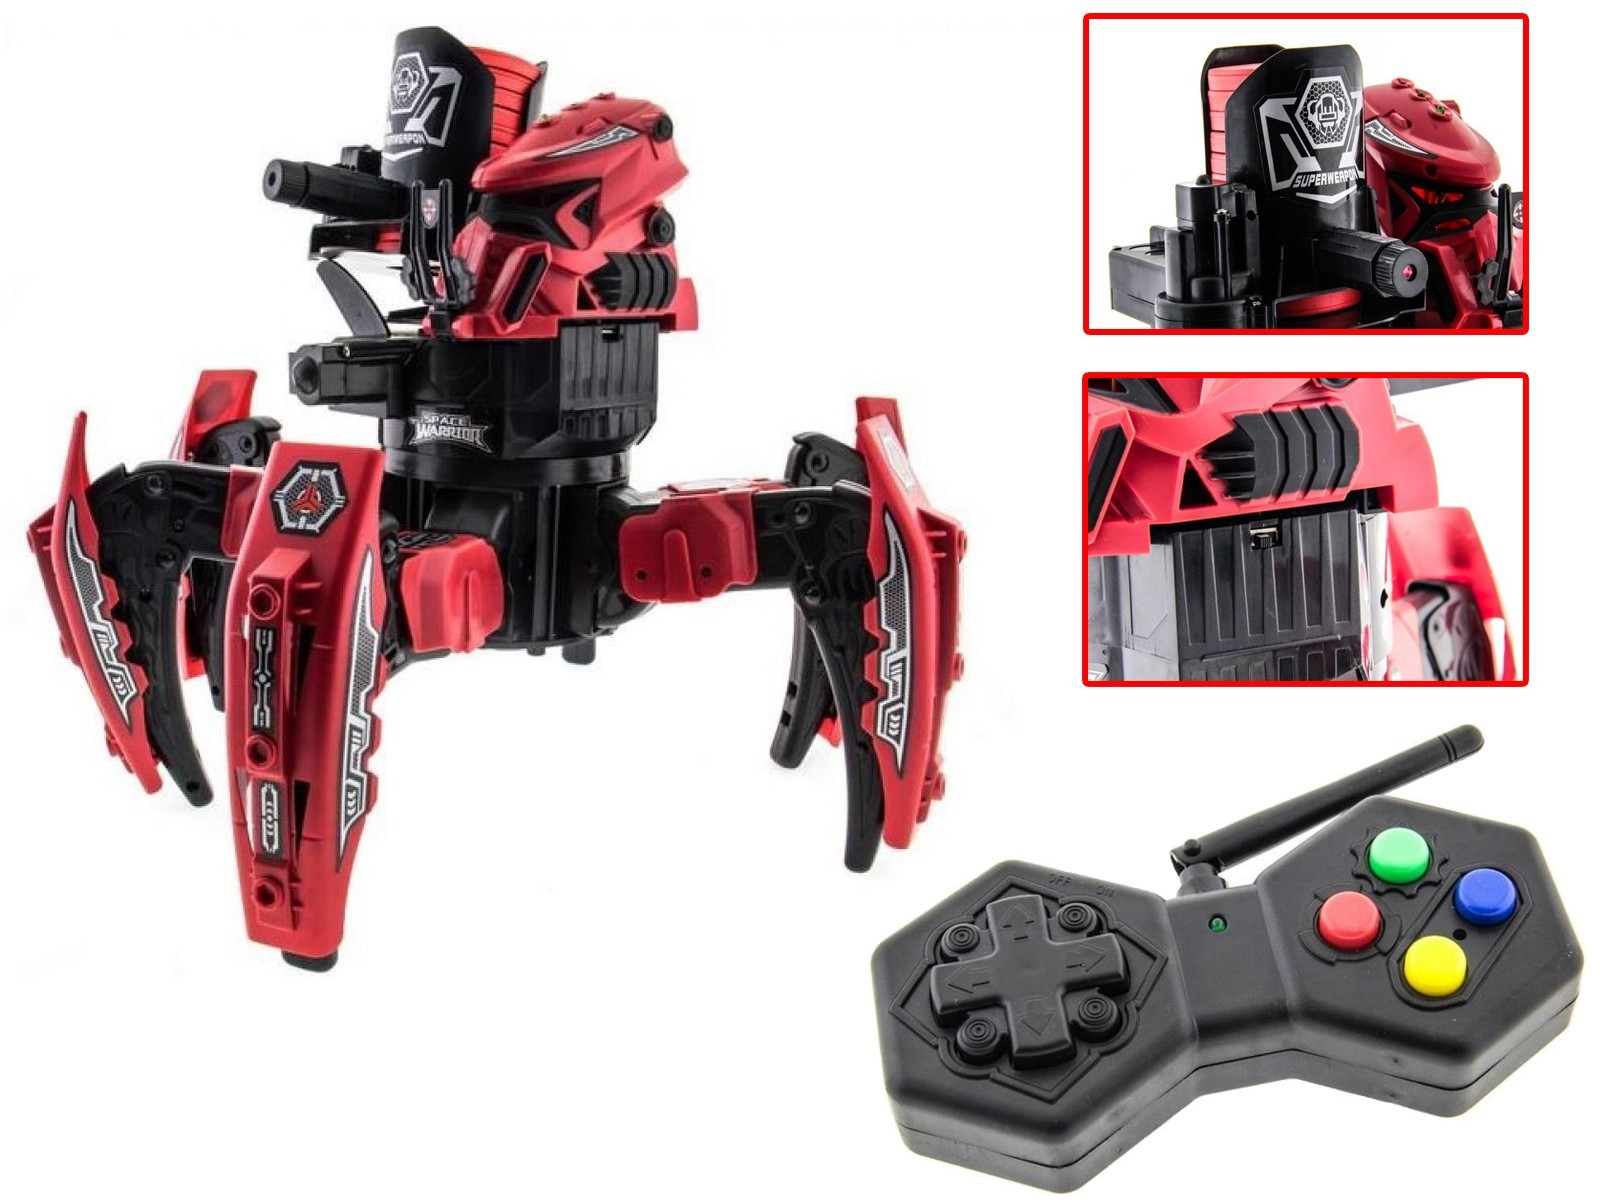 

Робот-паук радиоуправляемый Keye Toys Space Warrior с ракетами и лазером (красный)